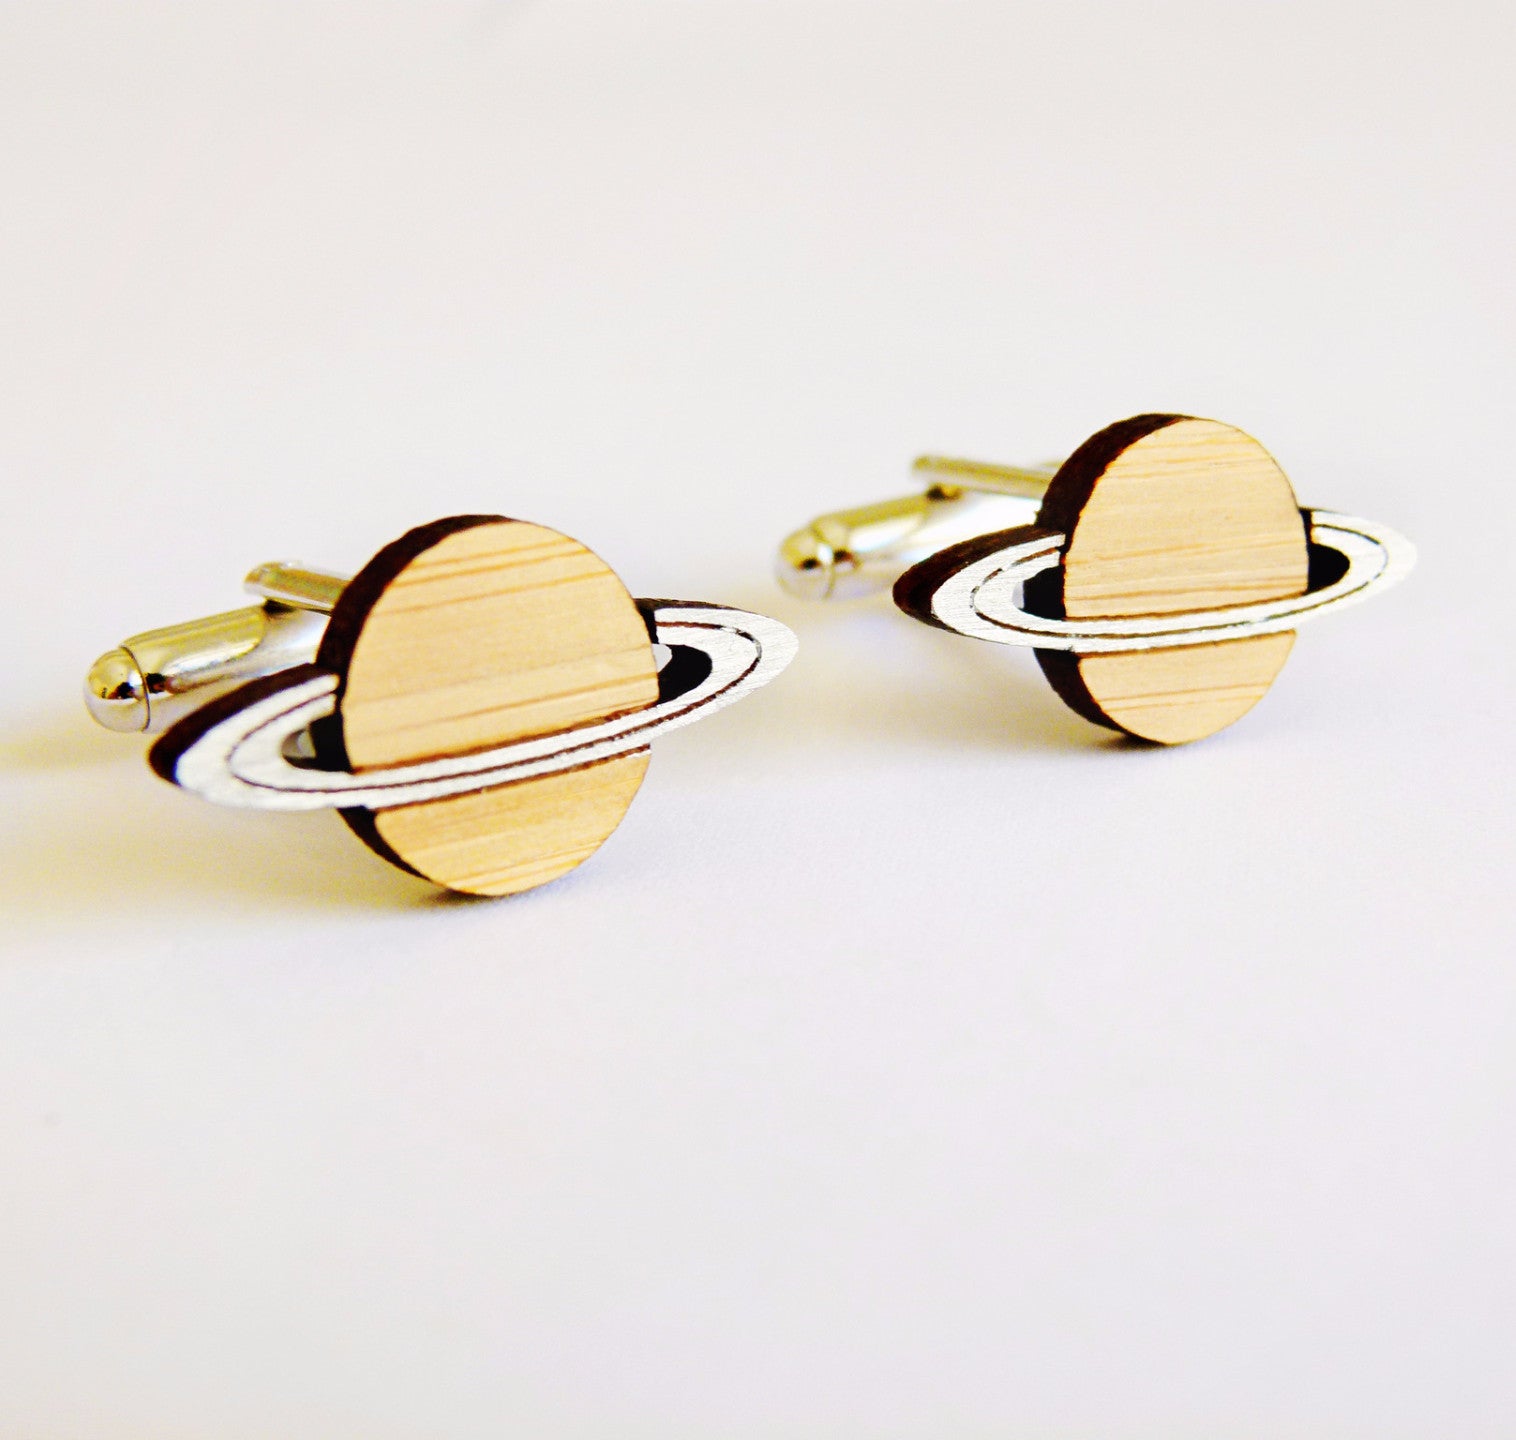 Saturn planet cufflinks - jewellery - eco friendly - sustainable jewelry - jewelry - One Happy Leaf